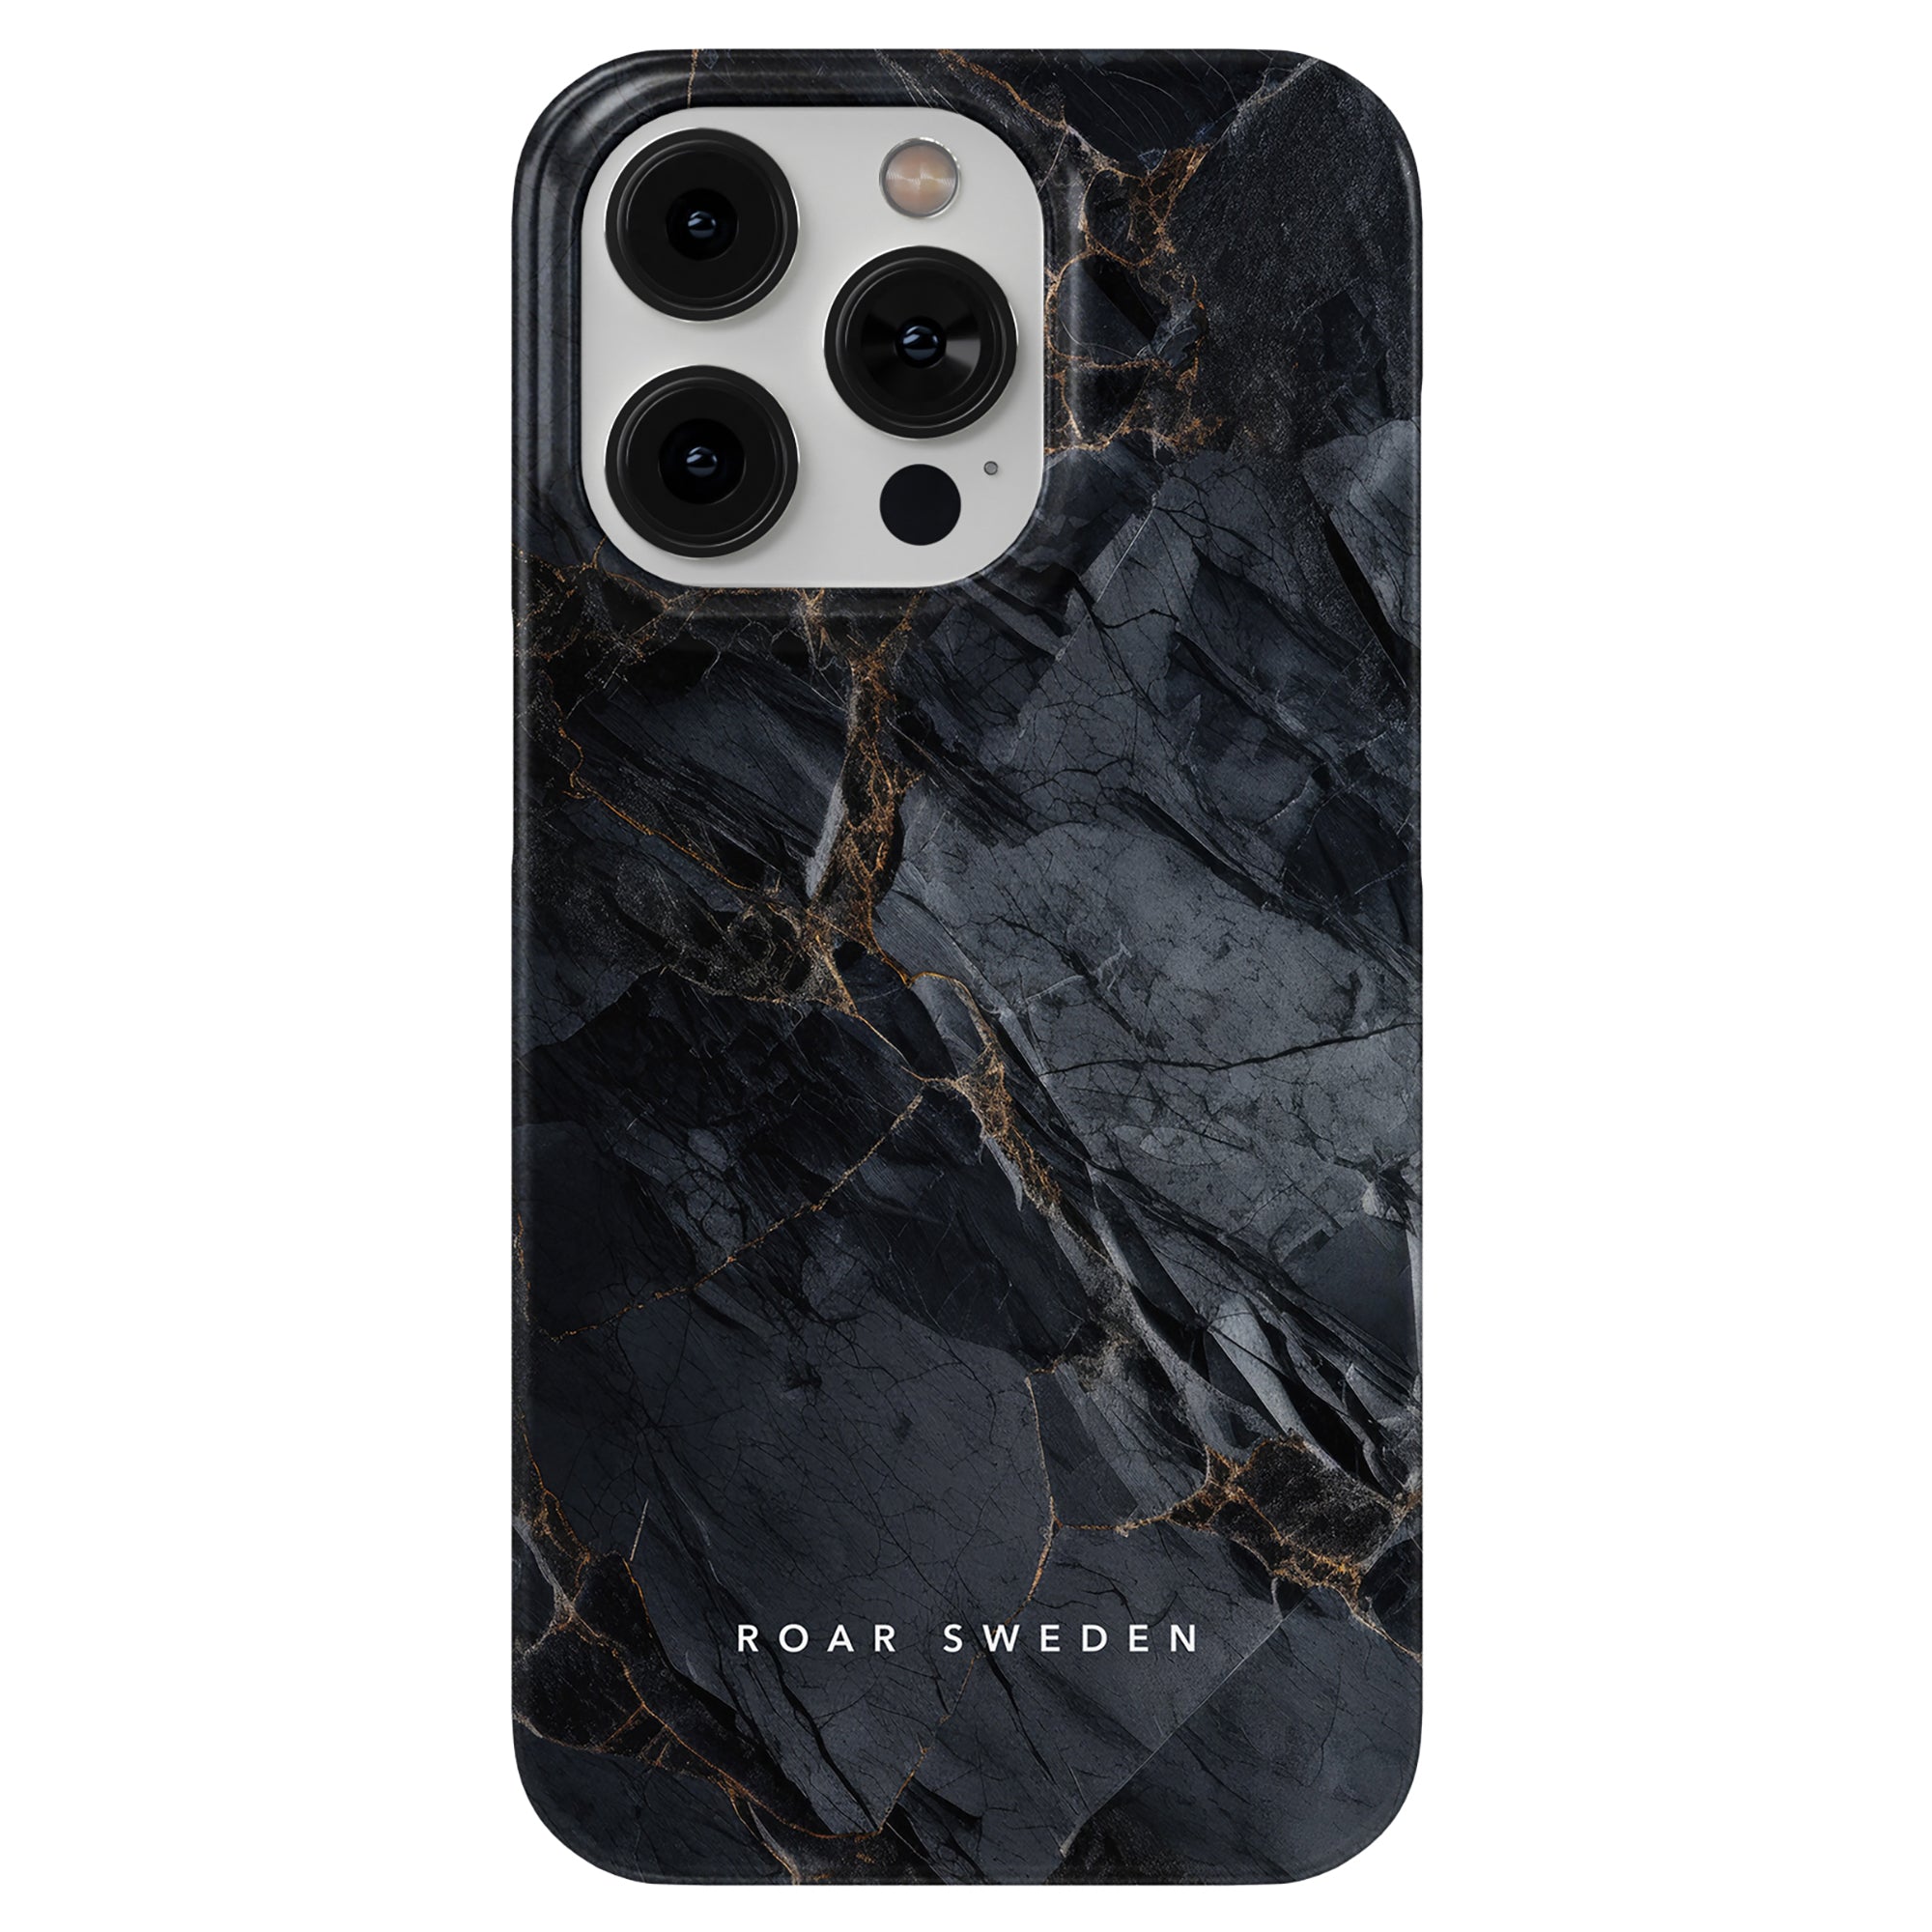 Ett elegant svart granit-tunt fodral designat speciellt för iPhone 11 Pro.